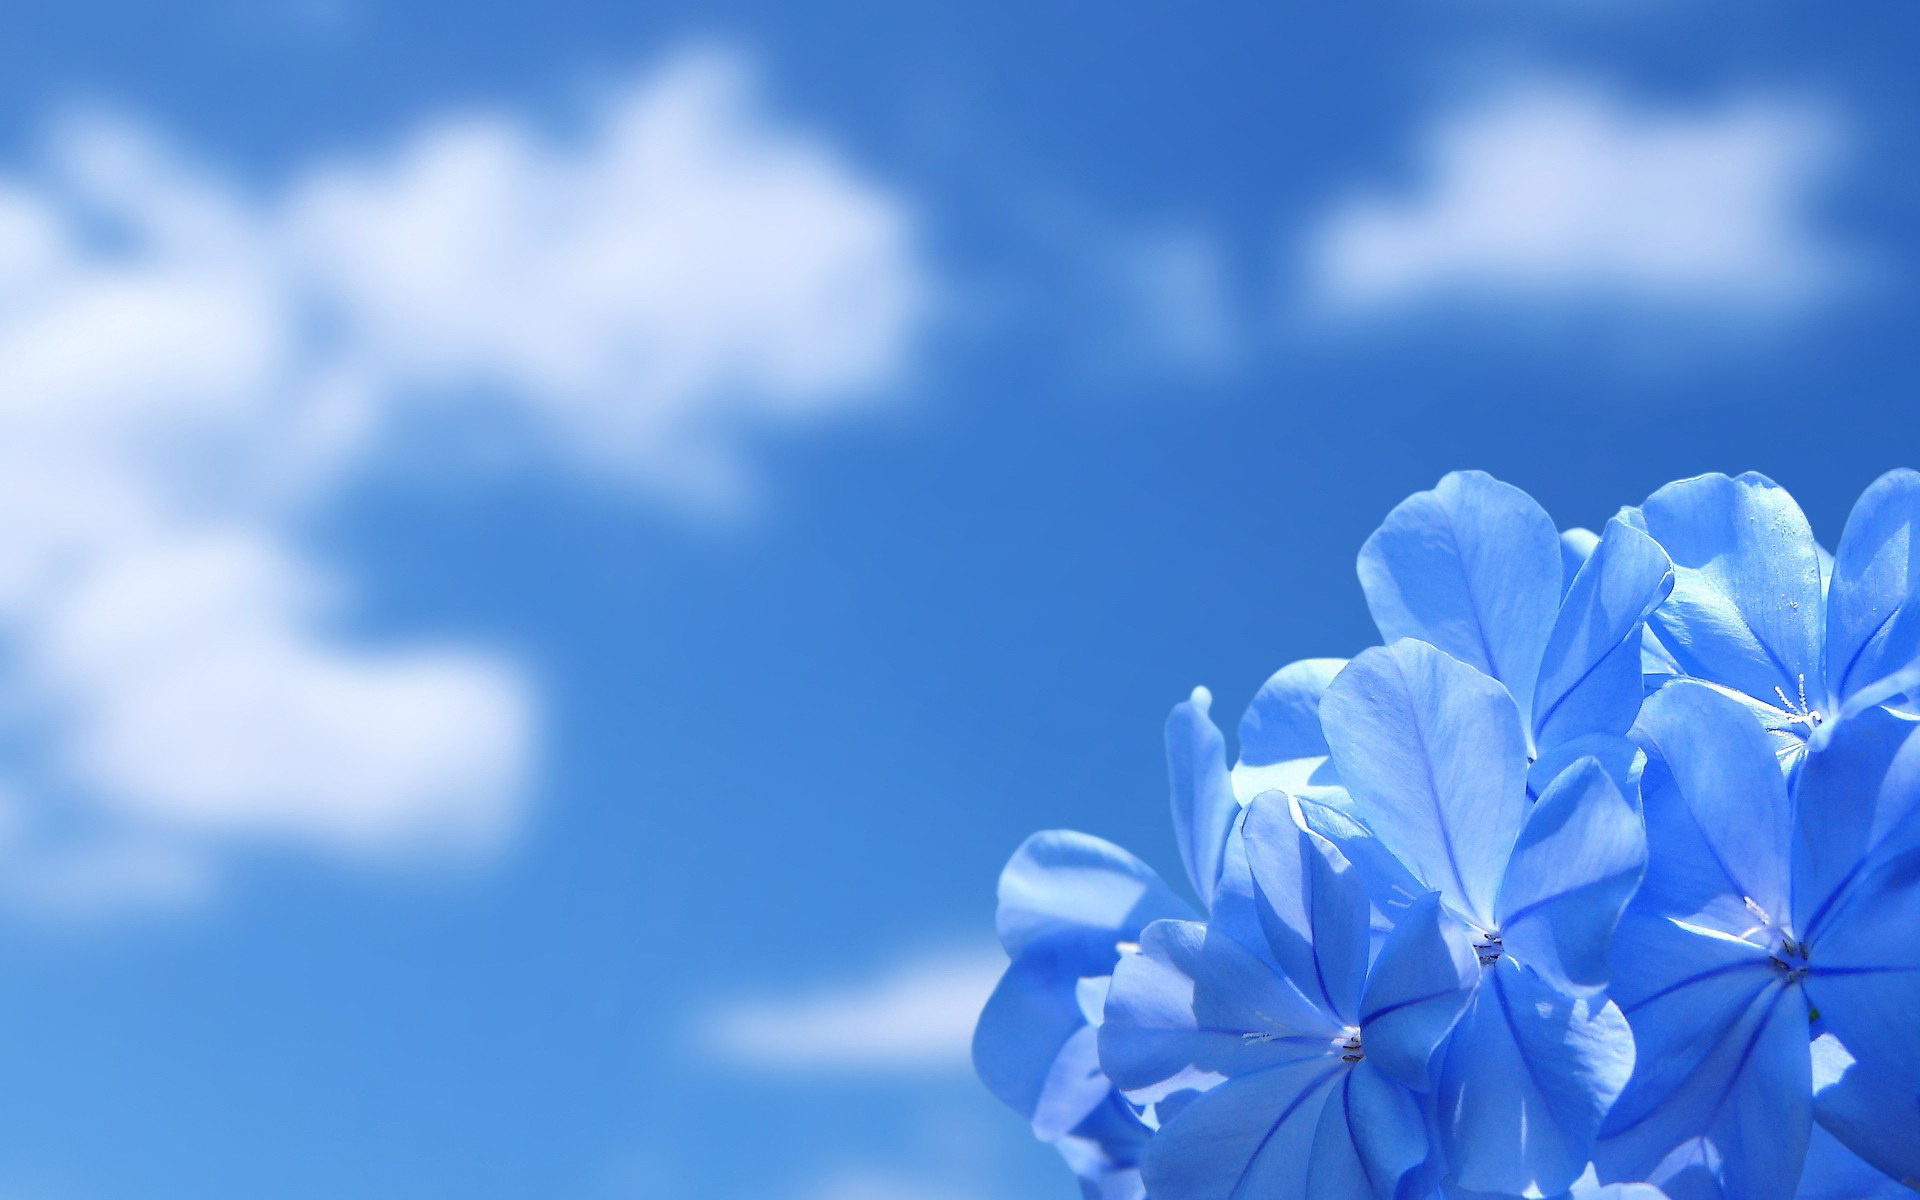 Hình nền máy tính HD: Hoa, Trái đất, Hoa xanh biển (HD desktop wallpaper: Flowers, Earth, Blue Flower download): Với chất lượng hình ảnh tuyệt đẹp và độ phân giải cao, loạt hình nền máy tính HD với các hình ảnh hoa, Trái đất và hoa xanh biển sẽ đem lại cho bạn một trải nghiệm thật tuyệt vời khi sử dụng máy tính. Tải ngay để có được bộ sưu tập hình nền đẹp và ấn tượng.